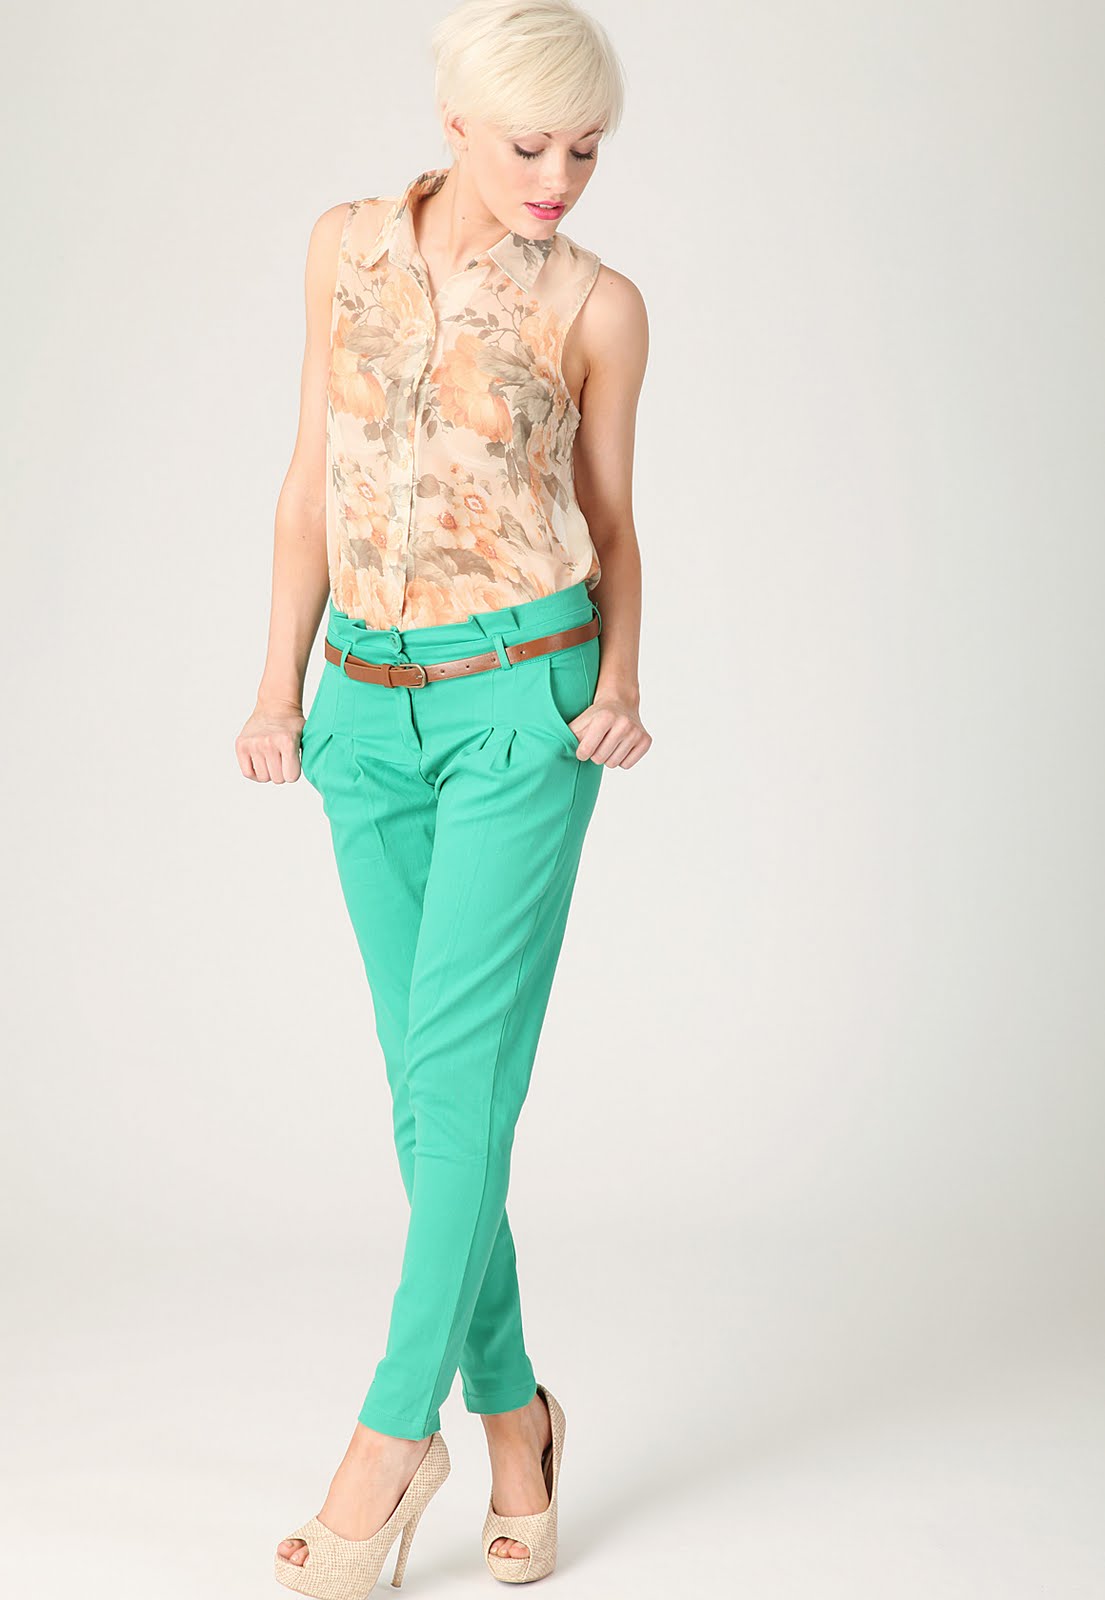 http://1.bp.blogspot.com/-elYOOUd_MMo/TaL7ty_LmlI/AAAAAAAAAiw/G5O7AdMYkCI/s1600/Kamilla+High+Waisted+Pleat+Style+Trouser+In+Green.jpg